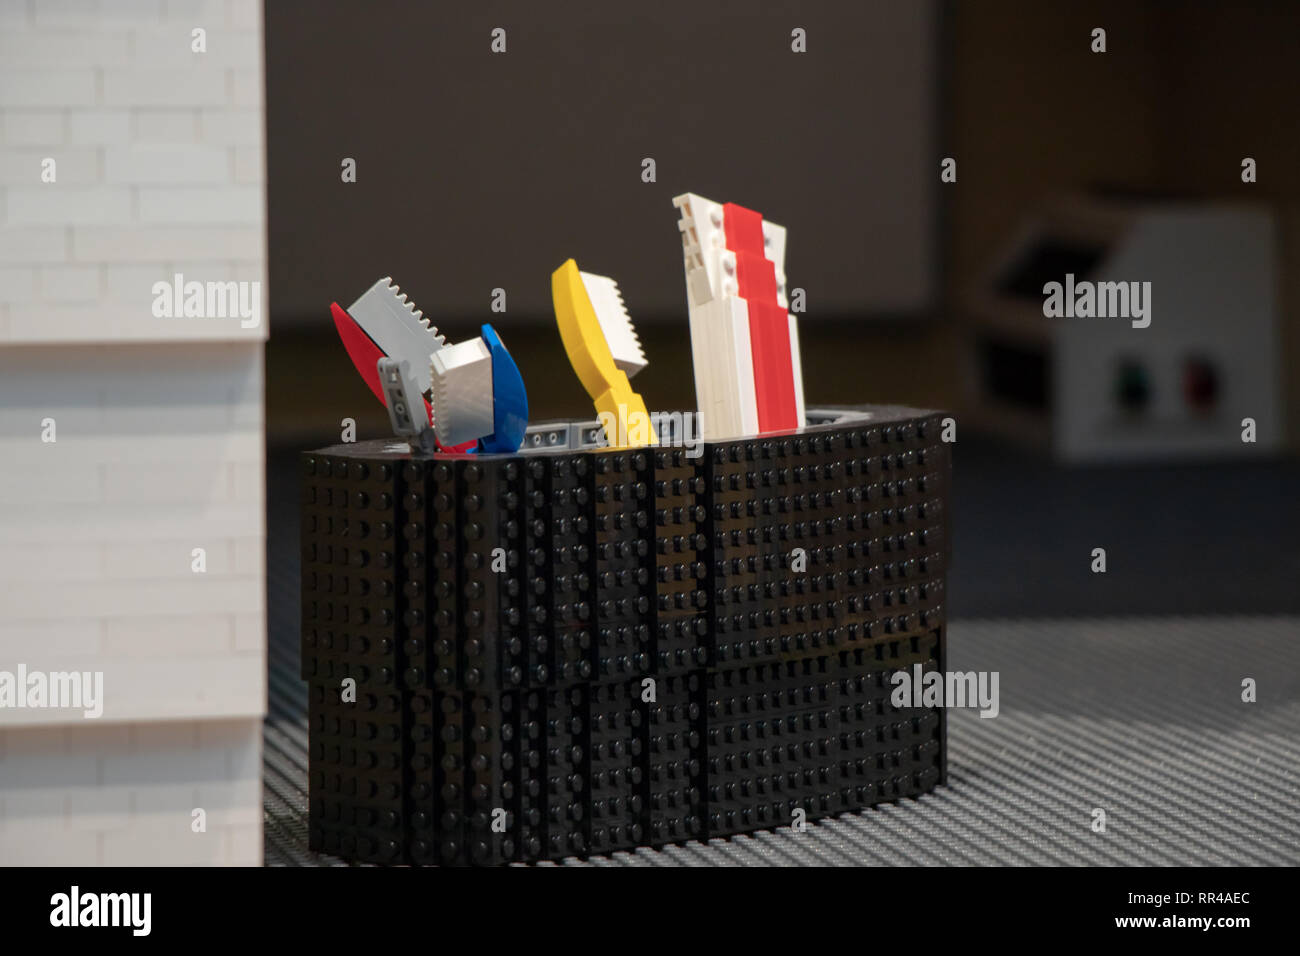 Bunte lego Zahnbürste und Zahnpasta in einem Lego Schale Stockfotografie -  Alamy